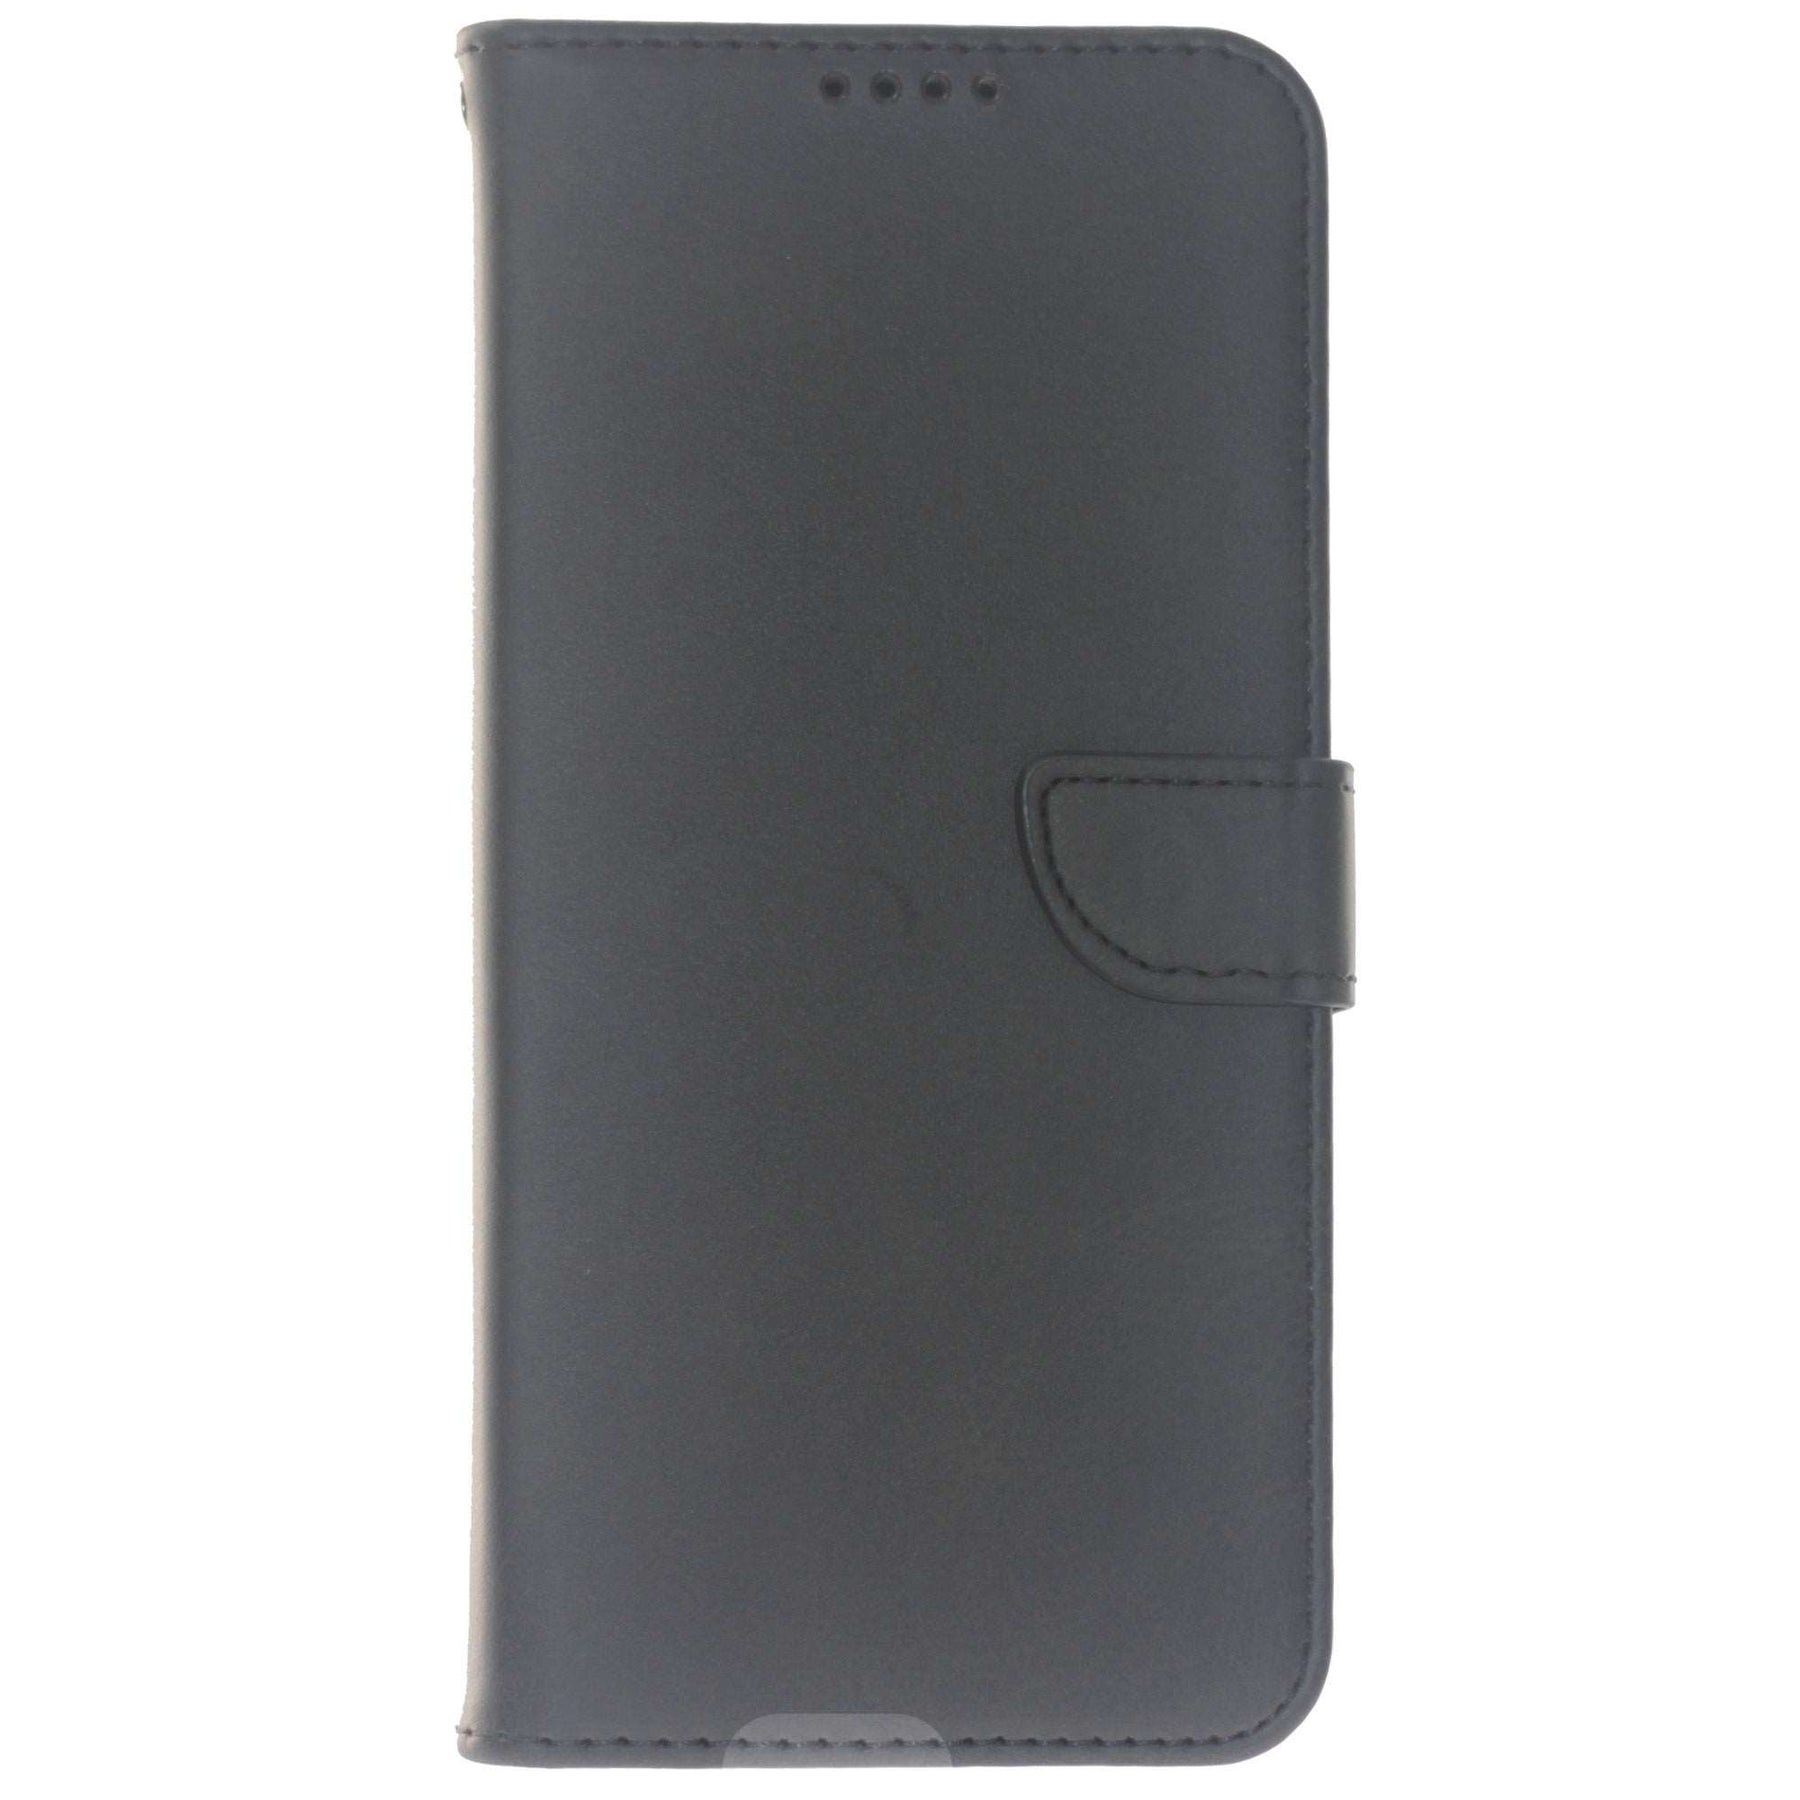 xiaomi mi11 black wallet case